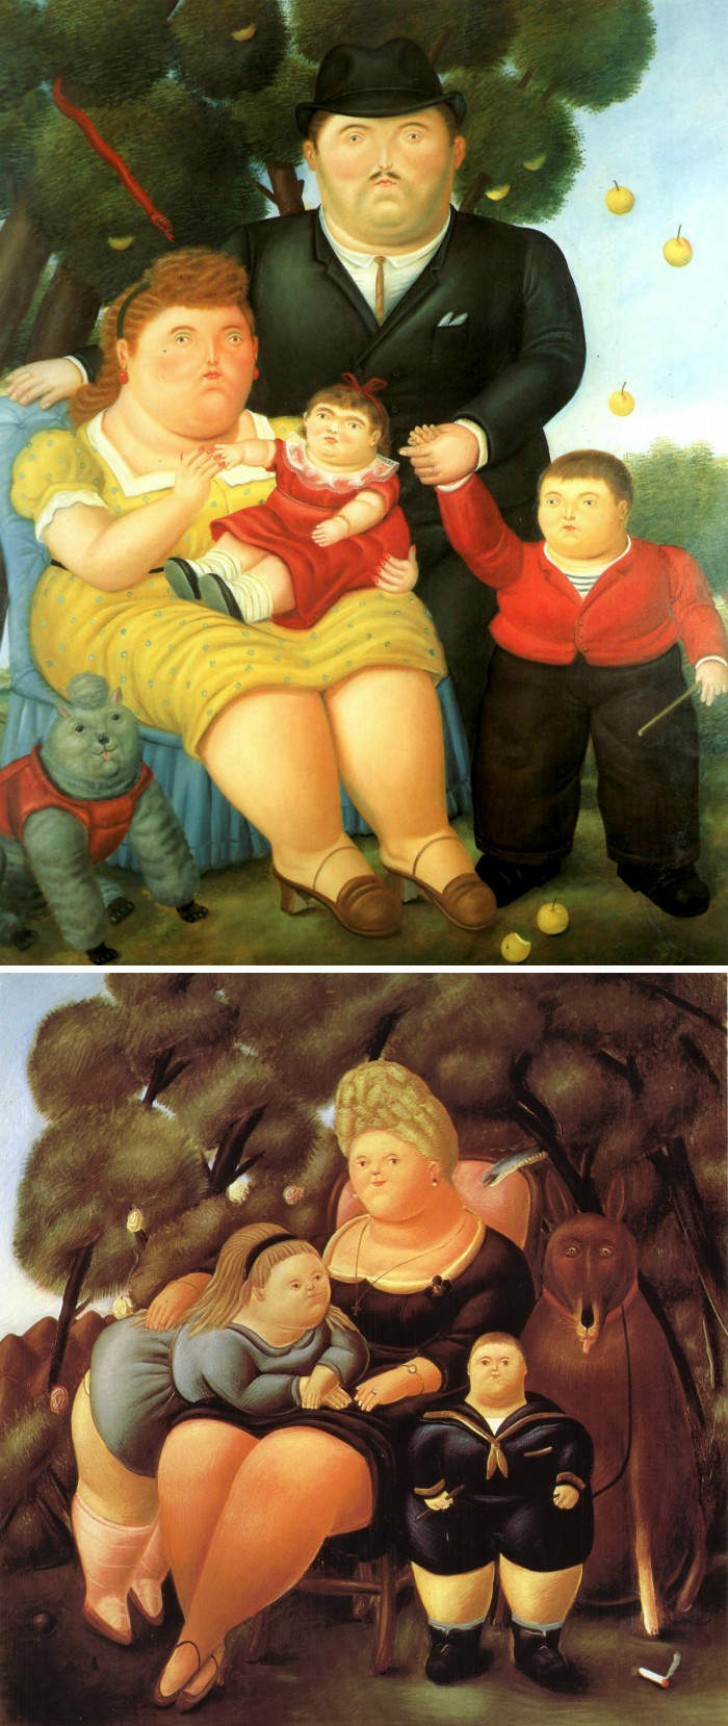 Wenn die gemalten Charaktere glücklich übergewichtig sind, kann es nur Fernando Botero sein!